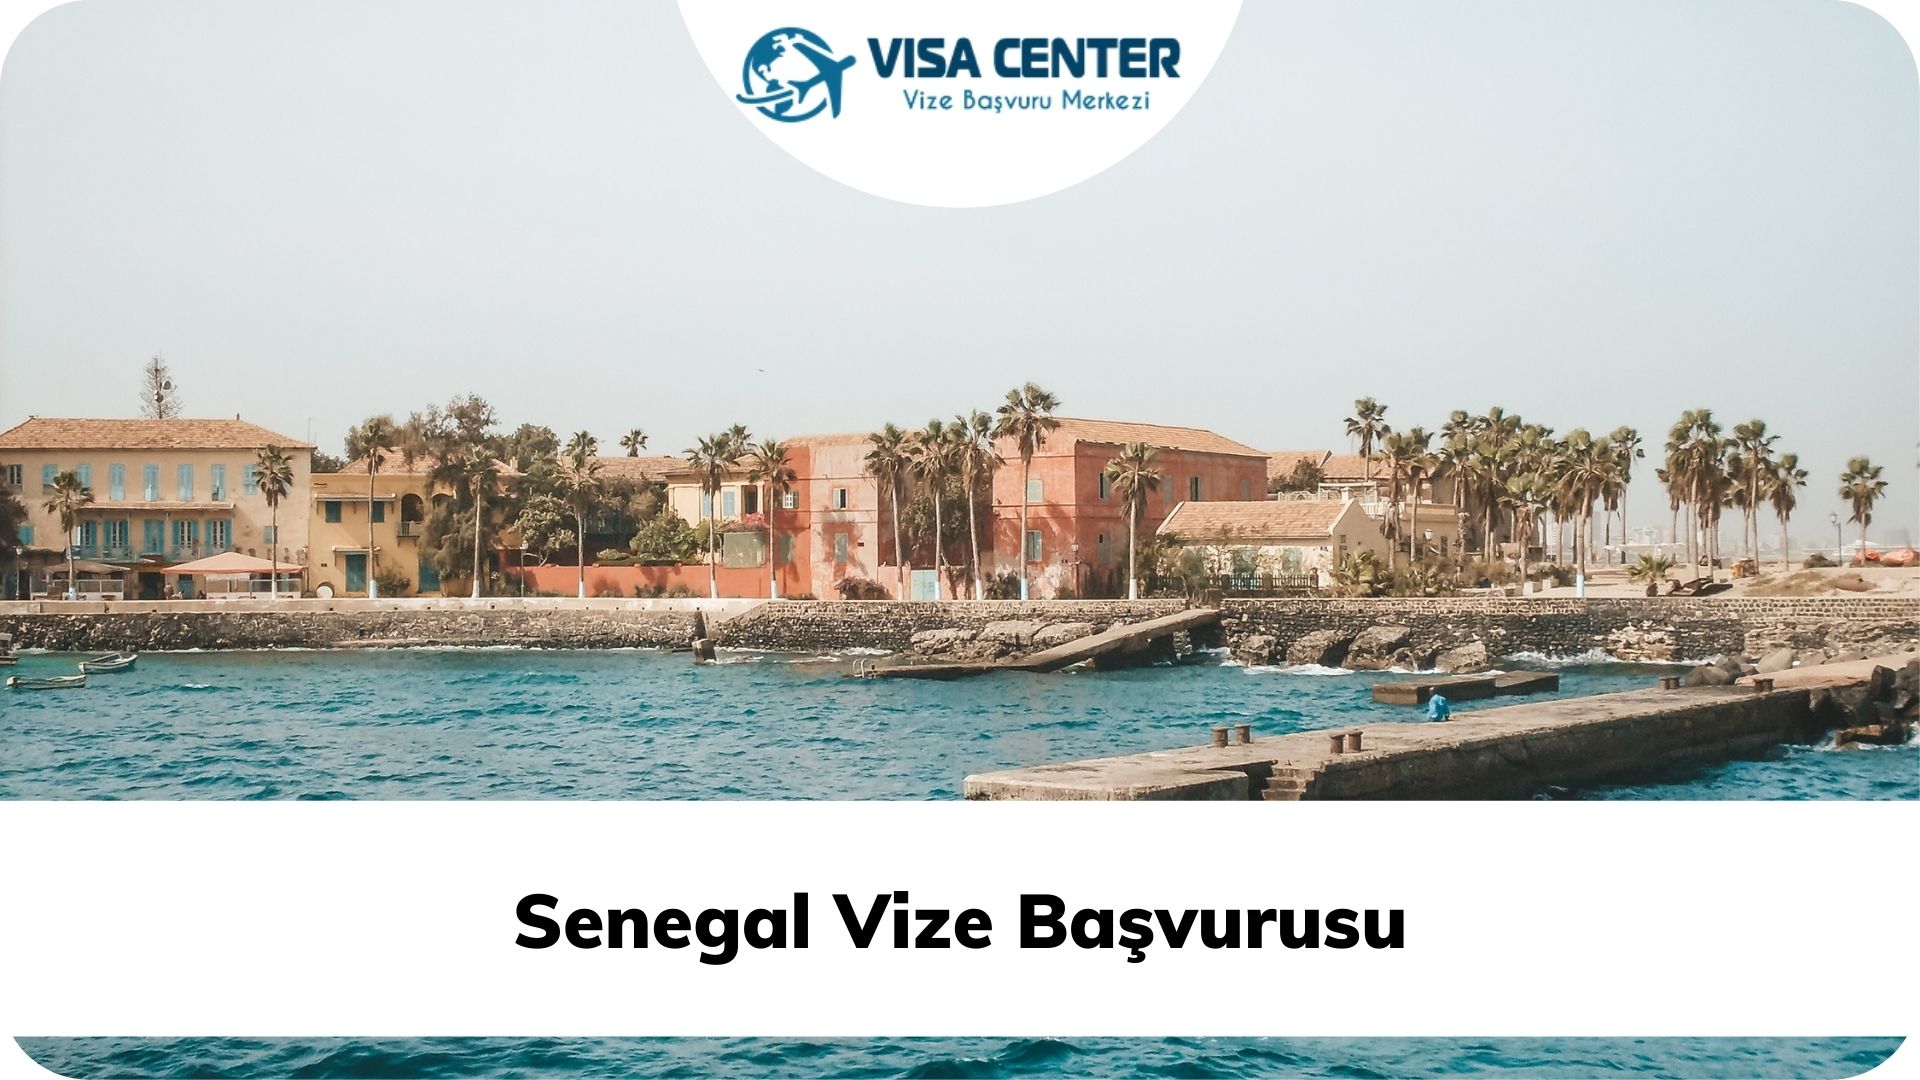 Senegal Vize Başvurusu